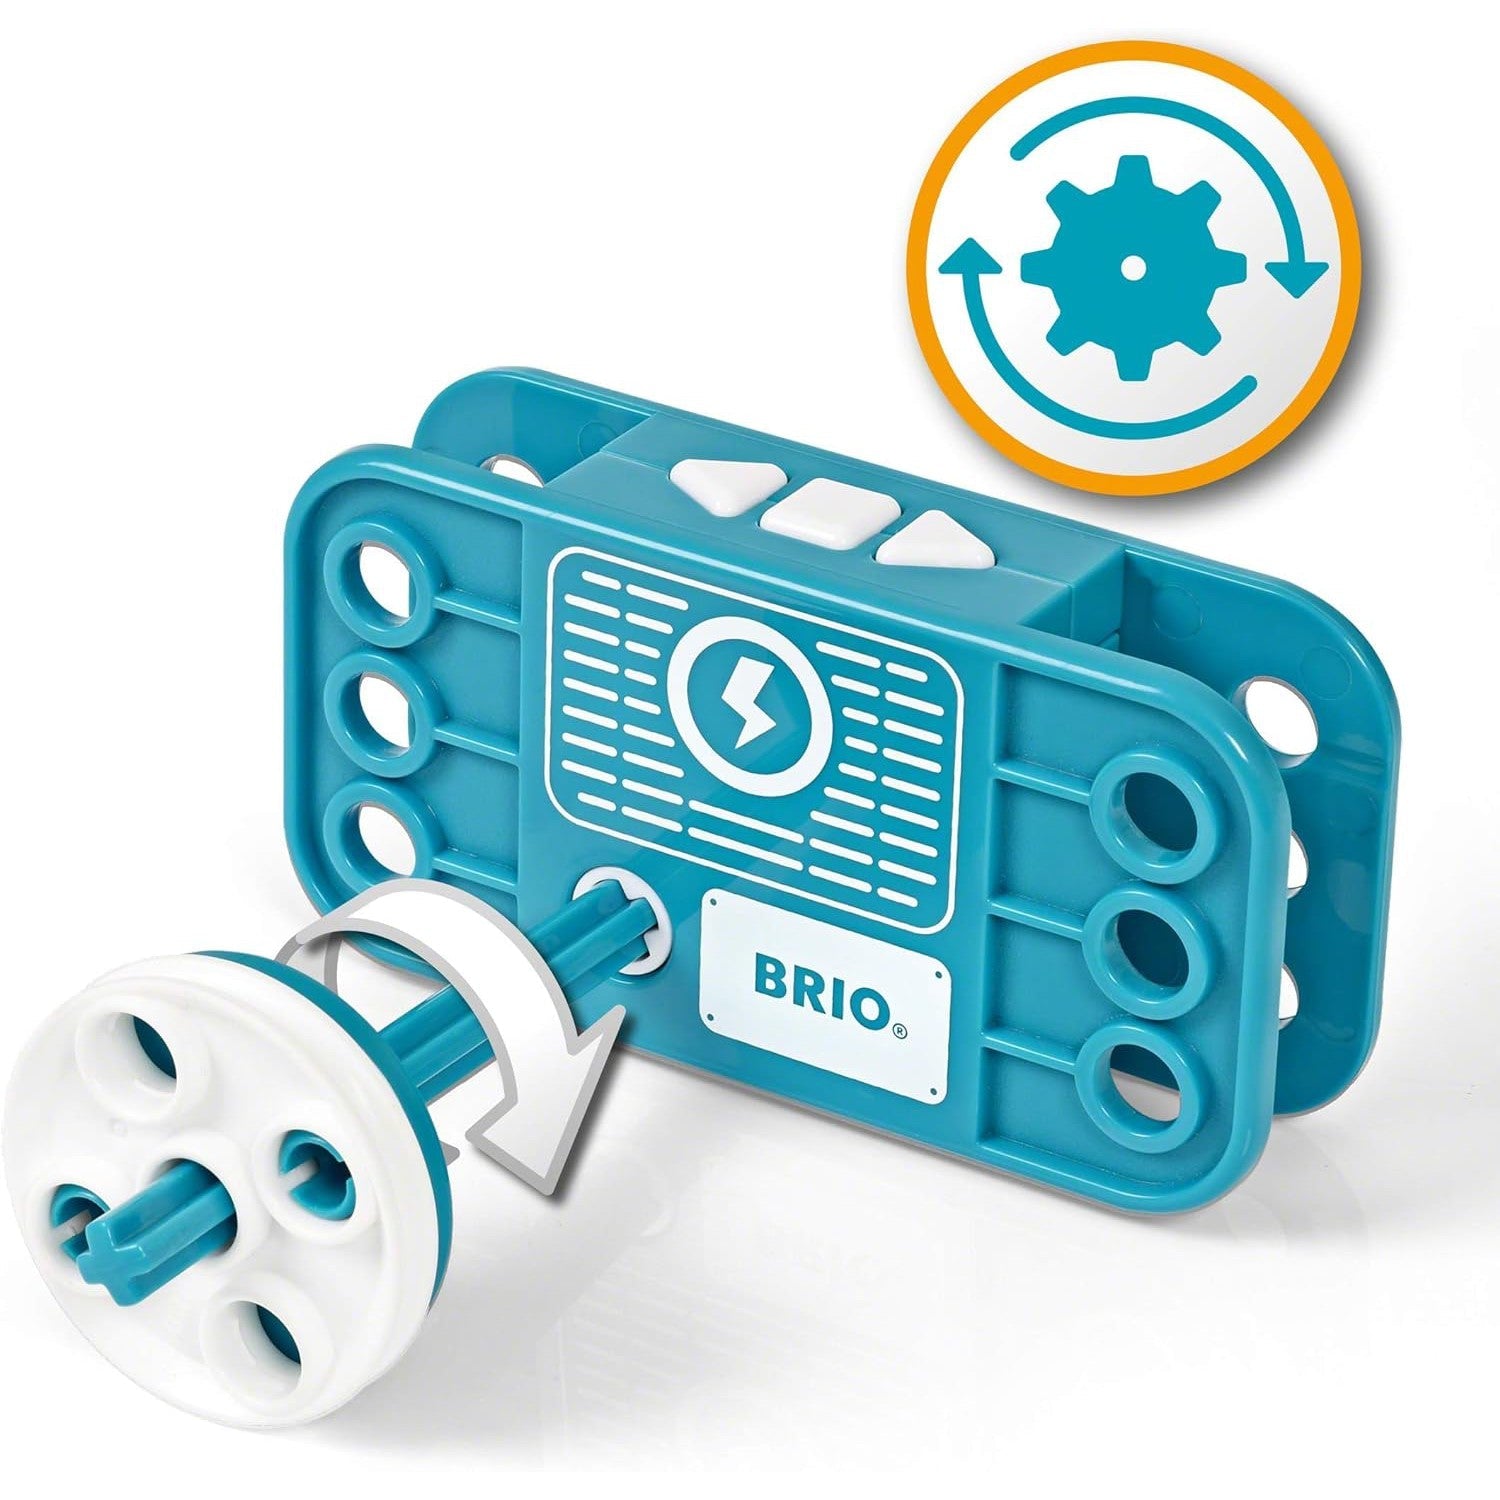 BRIO Builder Motor Set - 121 Pieces-BRIO-Little Giant Kidz